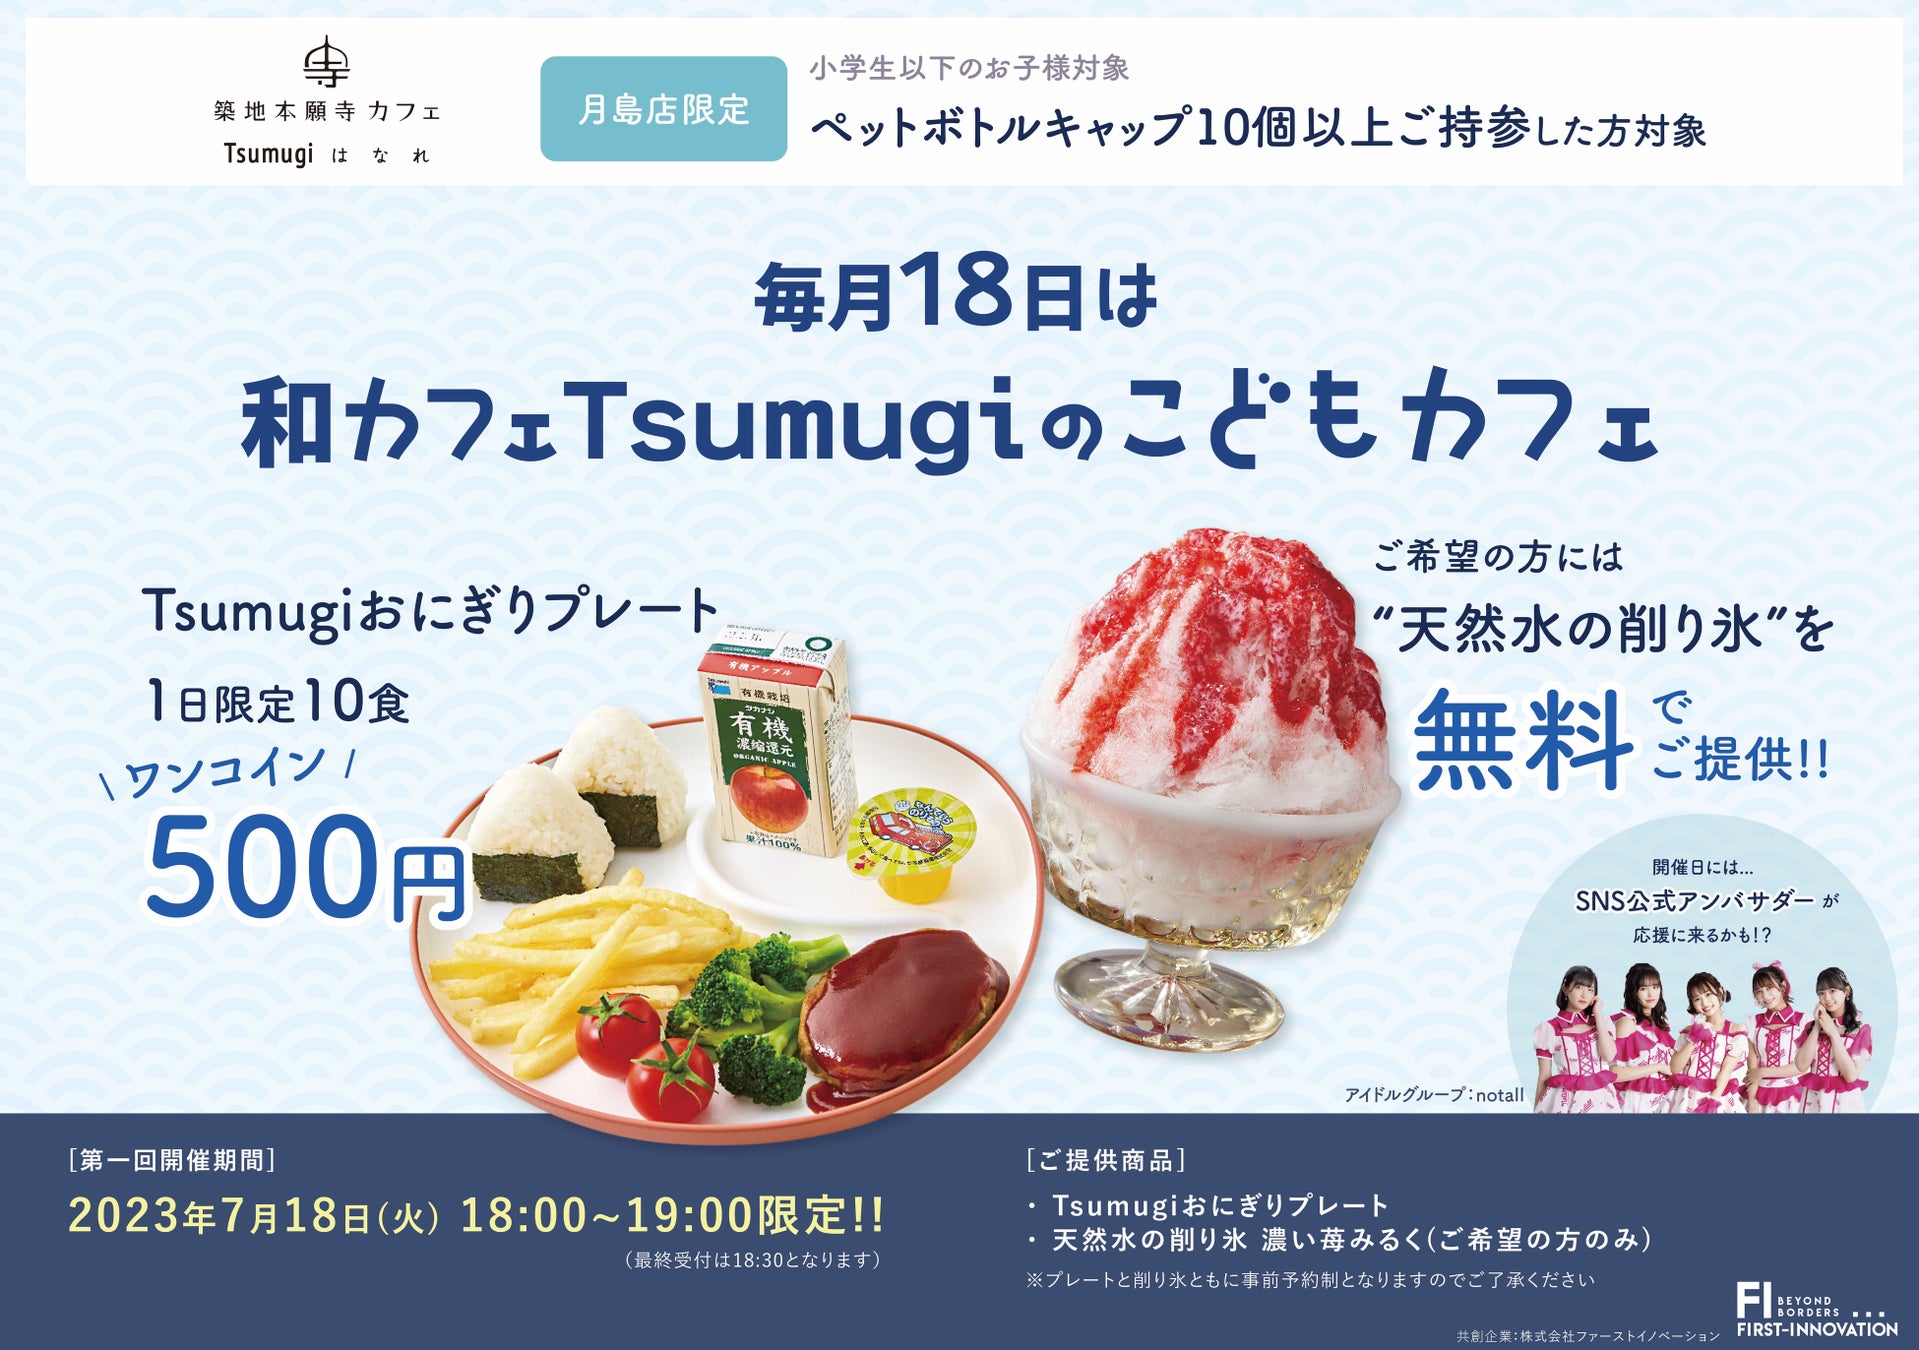 『築地本願寺カフェ Tsumugi はなれ ⽉島店』開催の「和カフェ Tsumugi のこどもカフェ」に共創企業として参加します